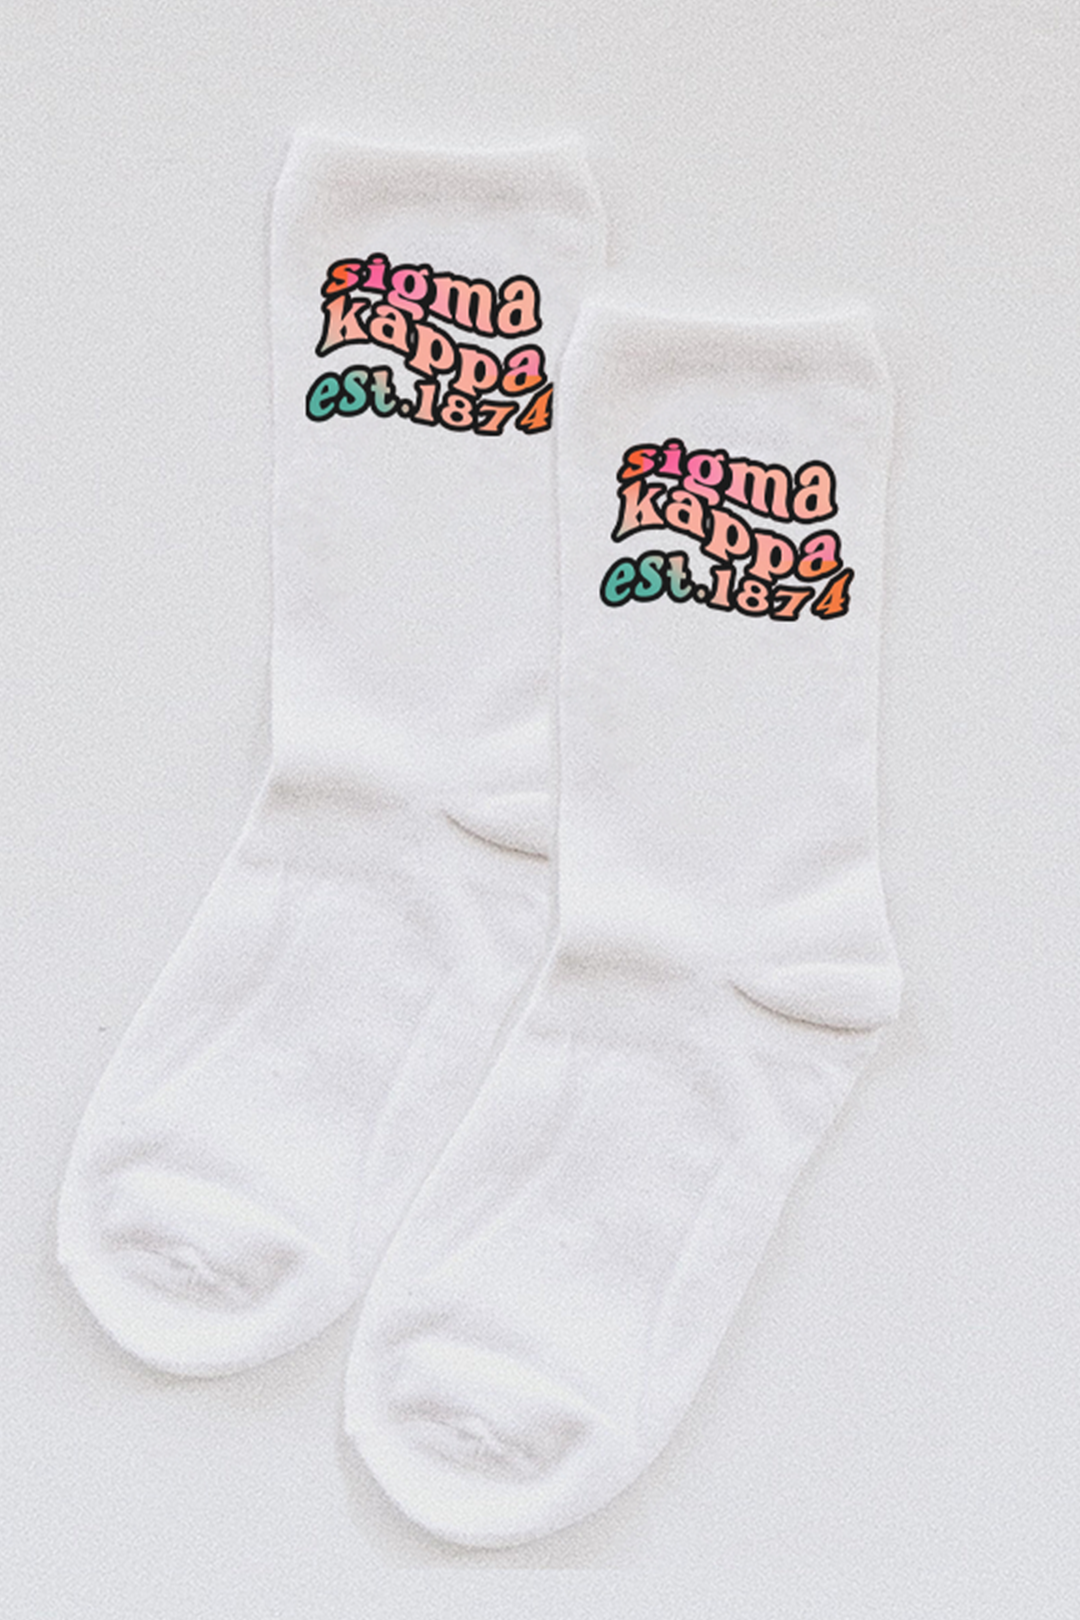 Gradient socks - Sigma Kappa